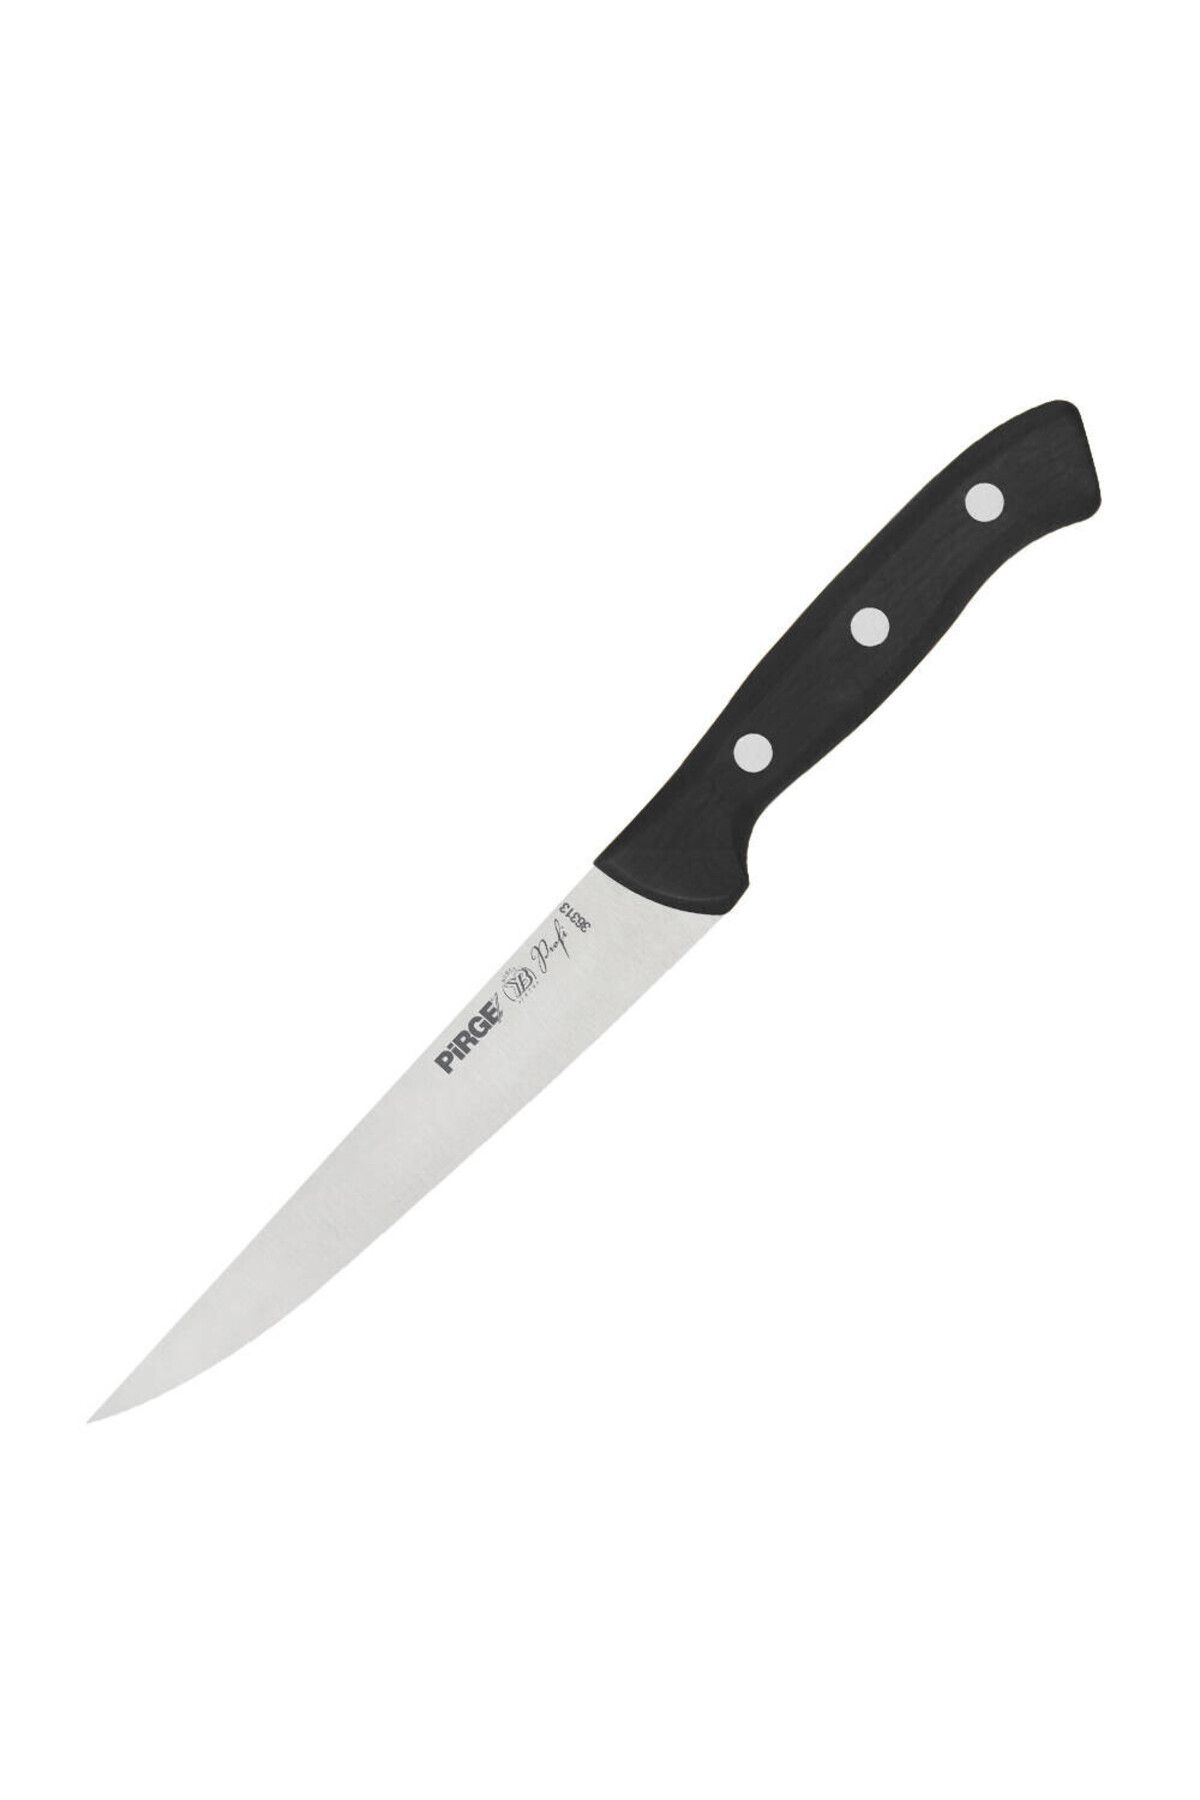 Pirge Profi Peynir Bıçağı 15,5 cm